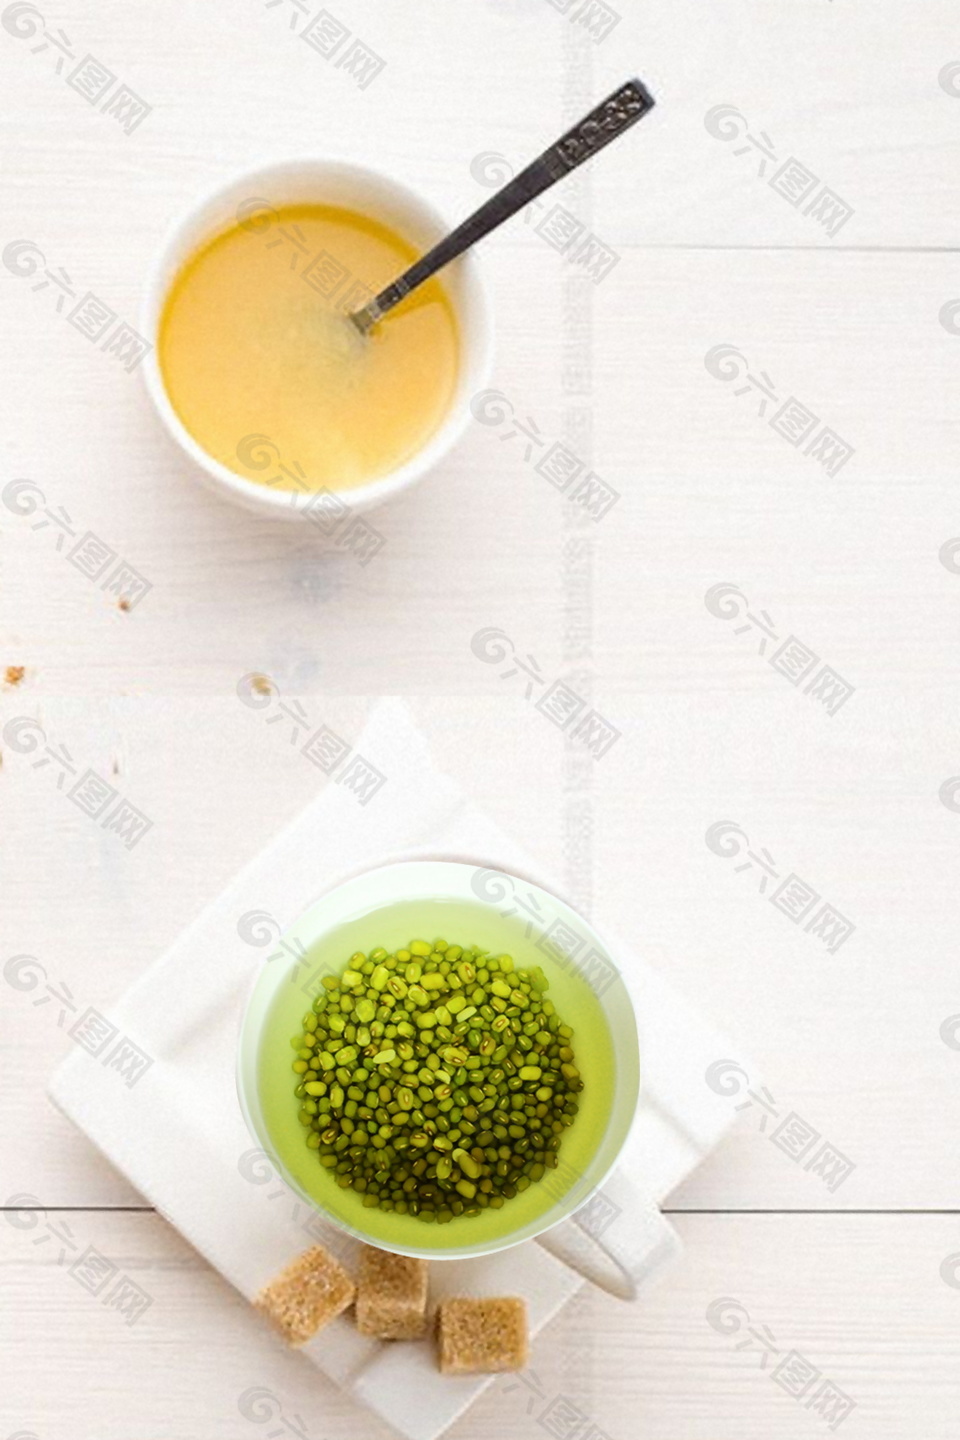 浸泡绿豆汤汁广告背景素材